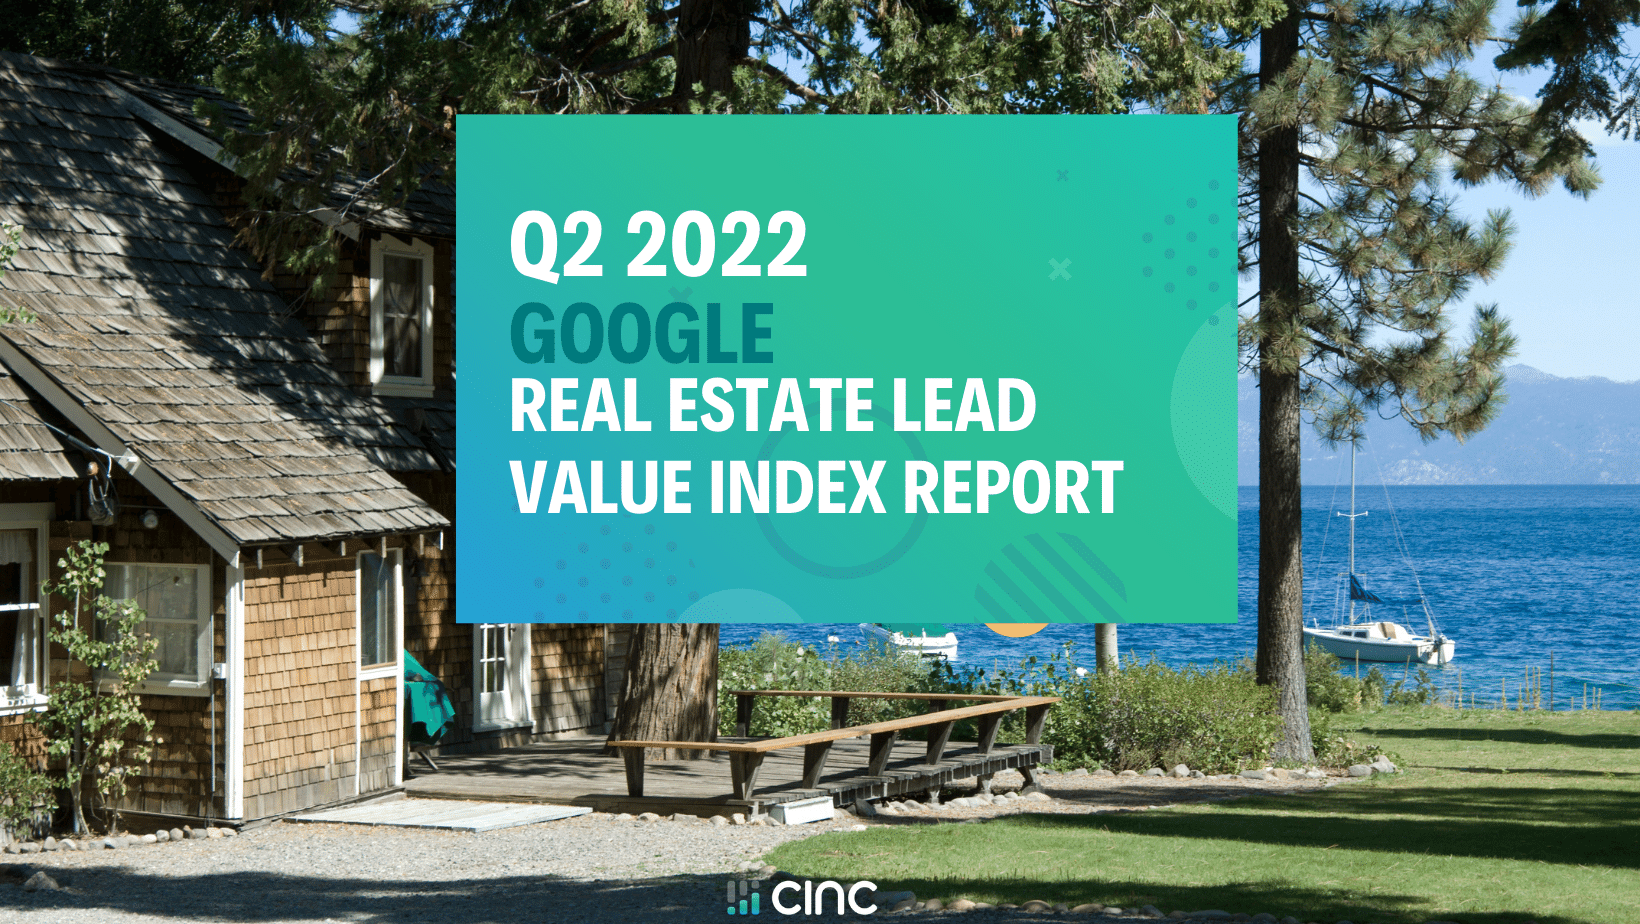 Q2 2022 Google Real Estate Lead Value Index (600 × 350 px)